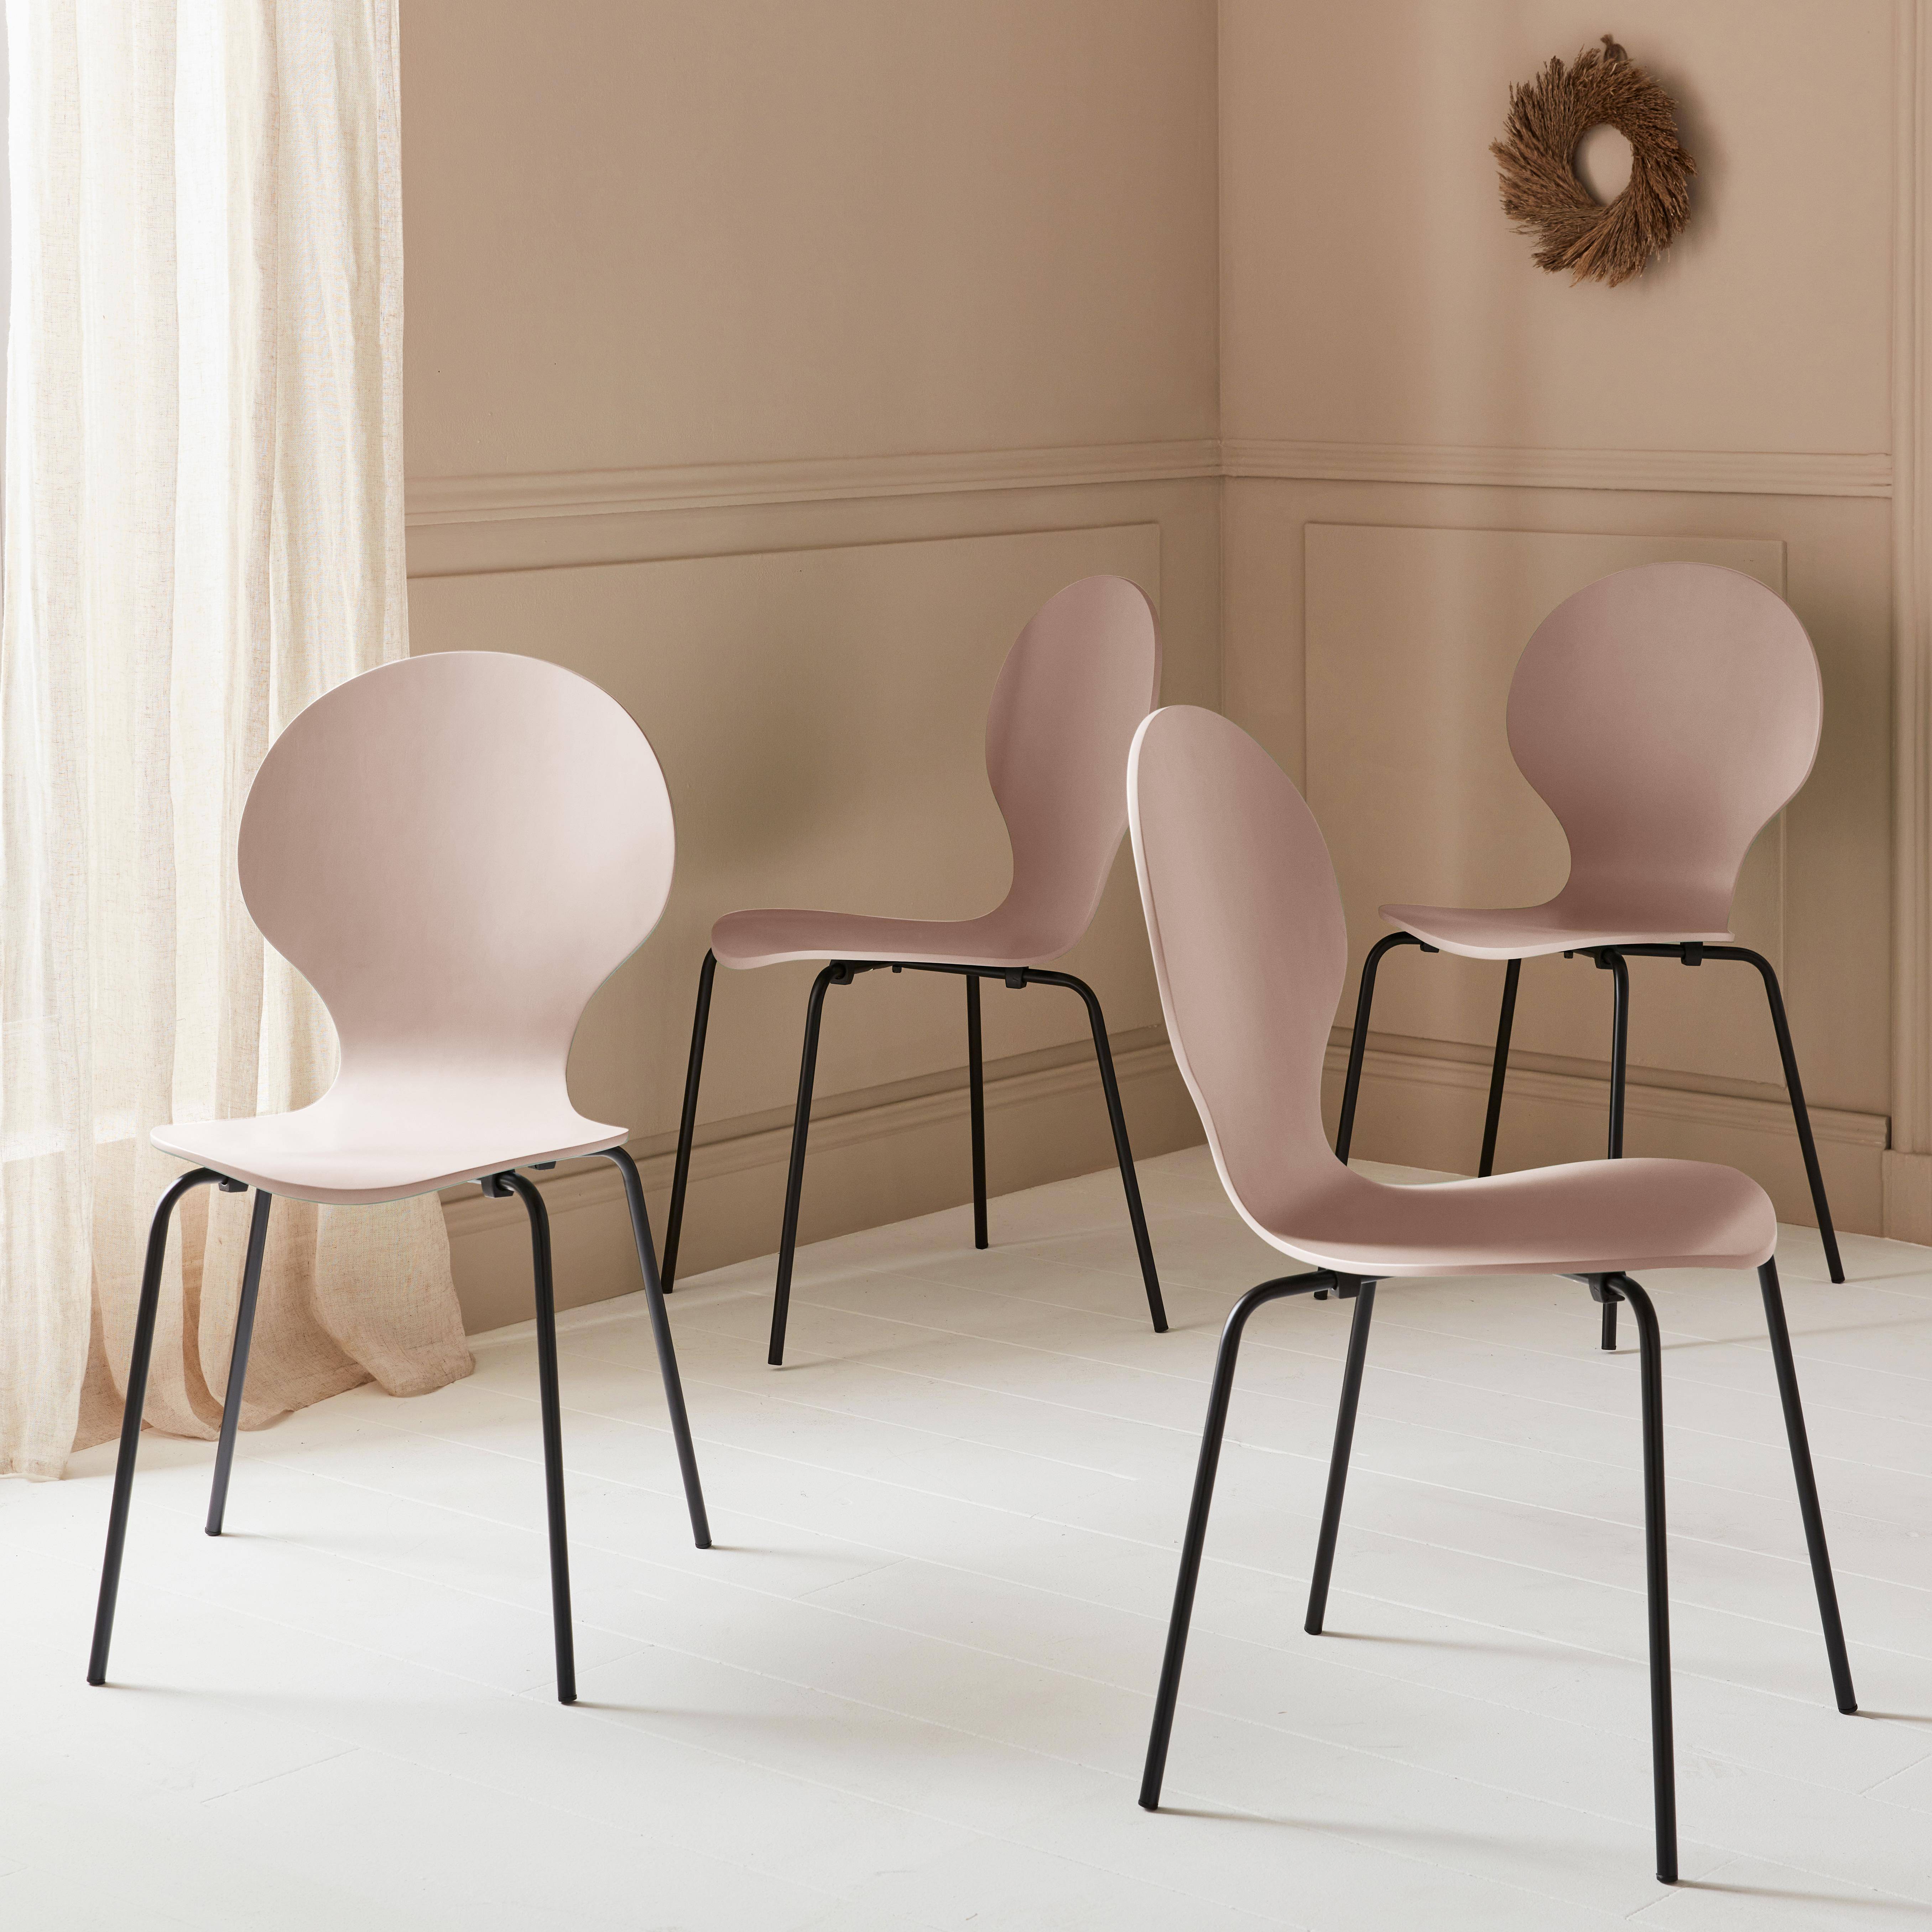 4er Set stapelbare Retro-Stühle in Rosa ,  Hevea-Holz und Sperrholz, Beine aus Stahl, Naomi, B 43 x T 48 x H 87cm,sweeek,Photo1